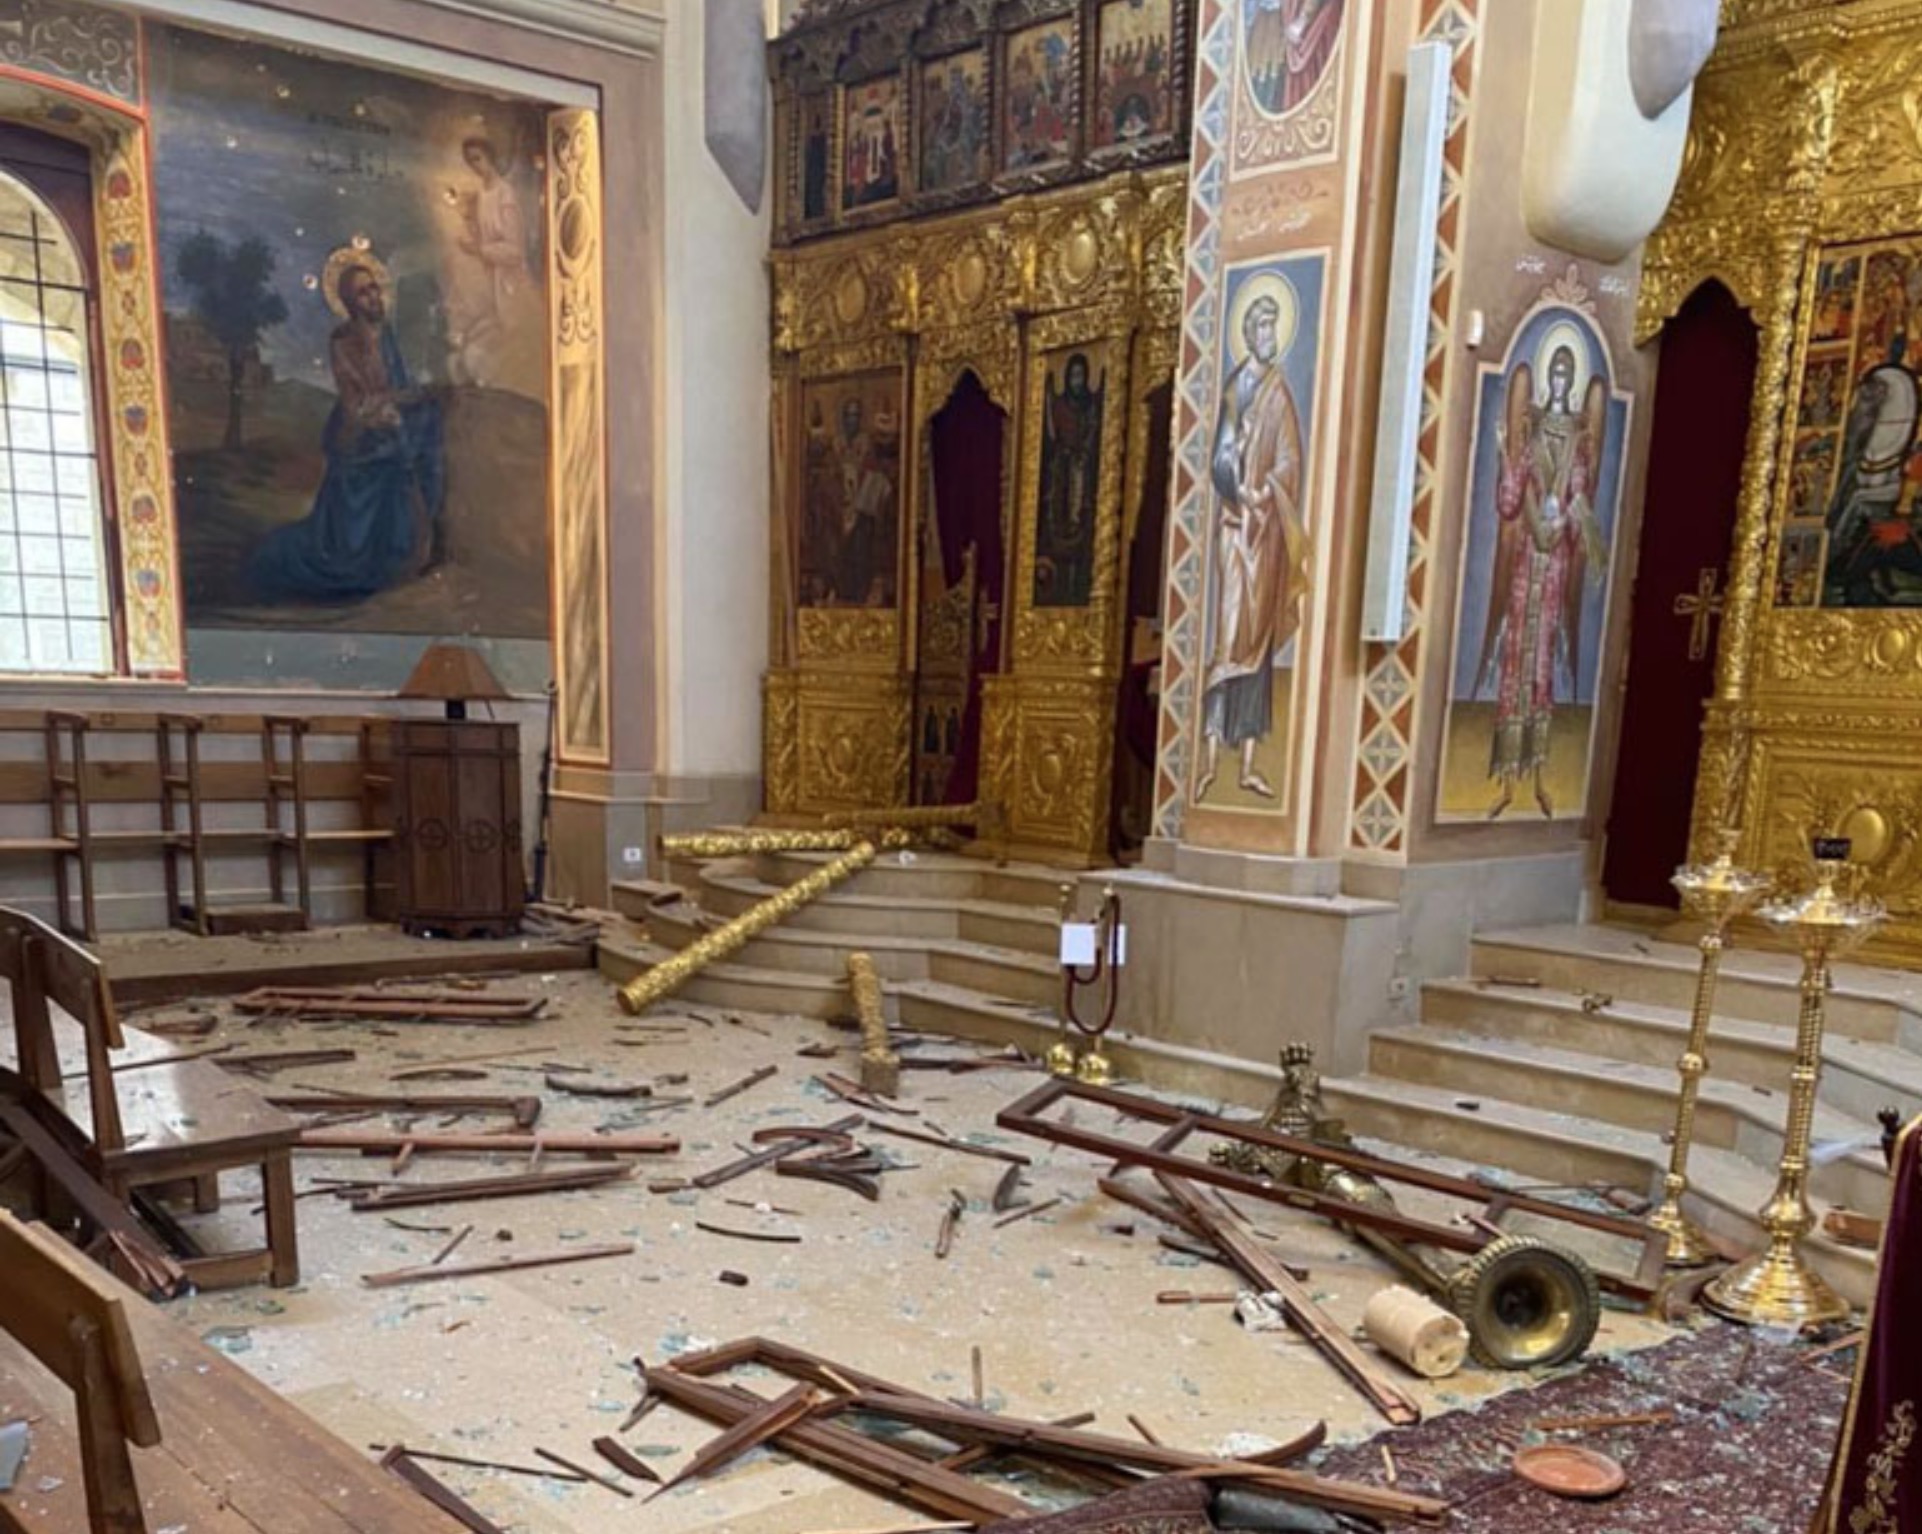 Le patriarche d’Antioche Jean X a envoyé une lettre de soutien au métropolite de Beyrouth Élie après l’explosion qui s’est produite dans la capitale libanaise